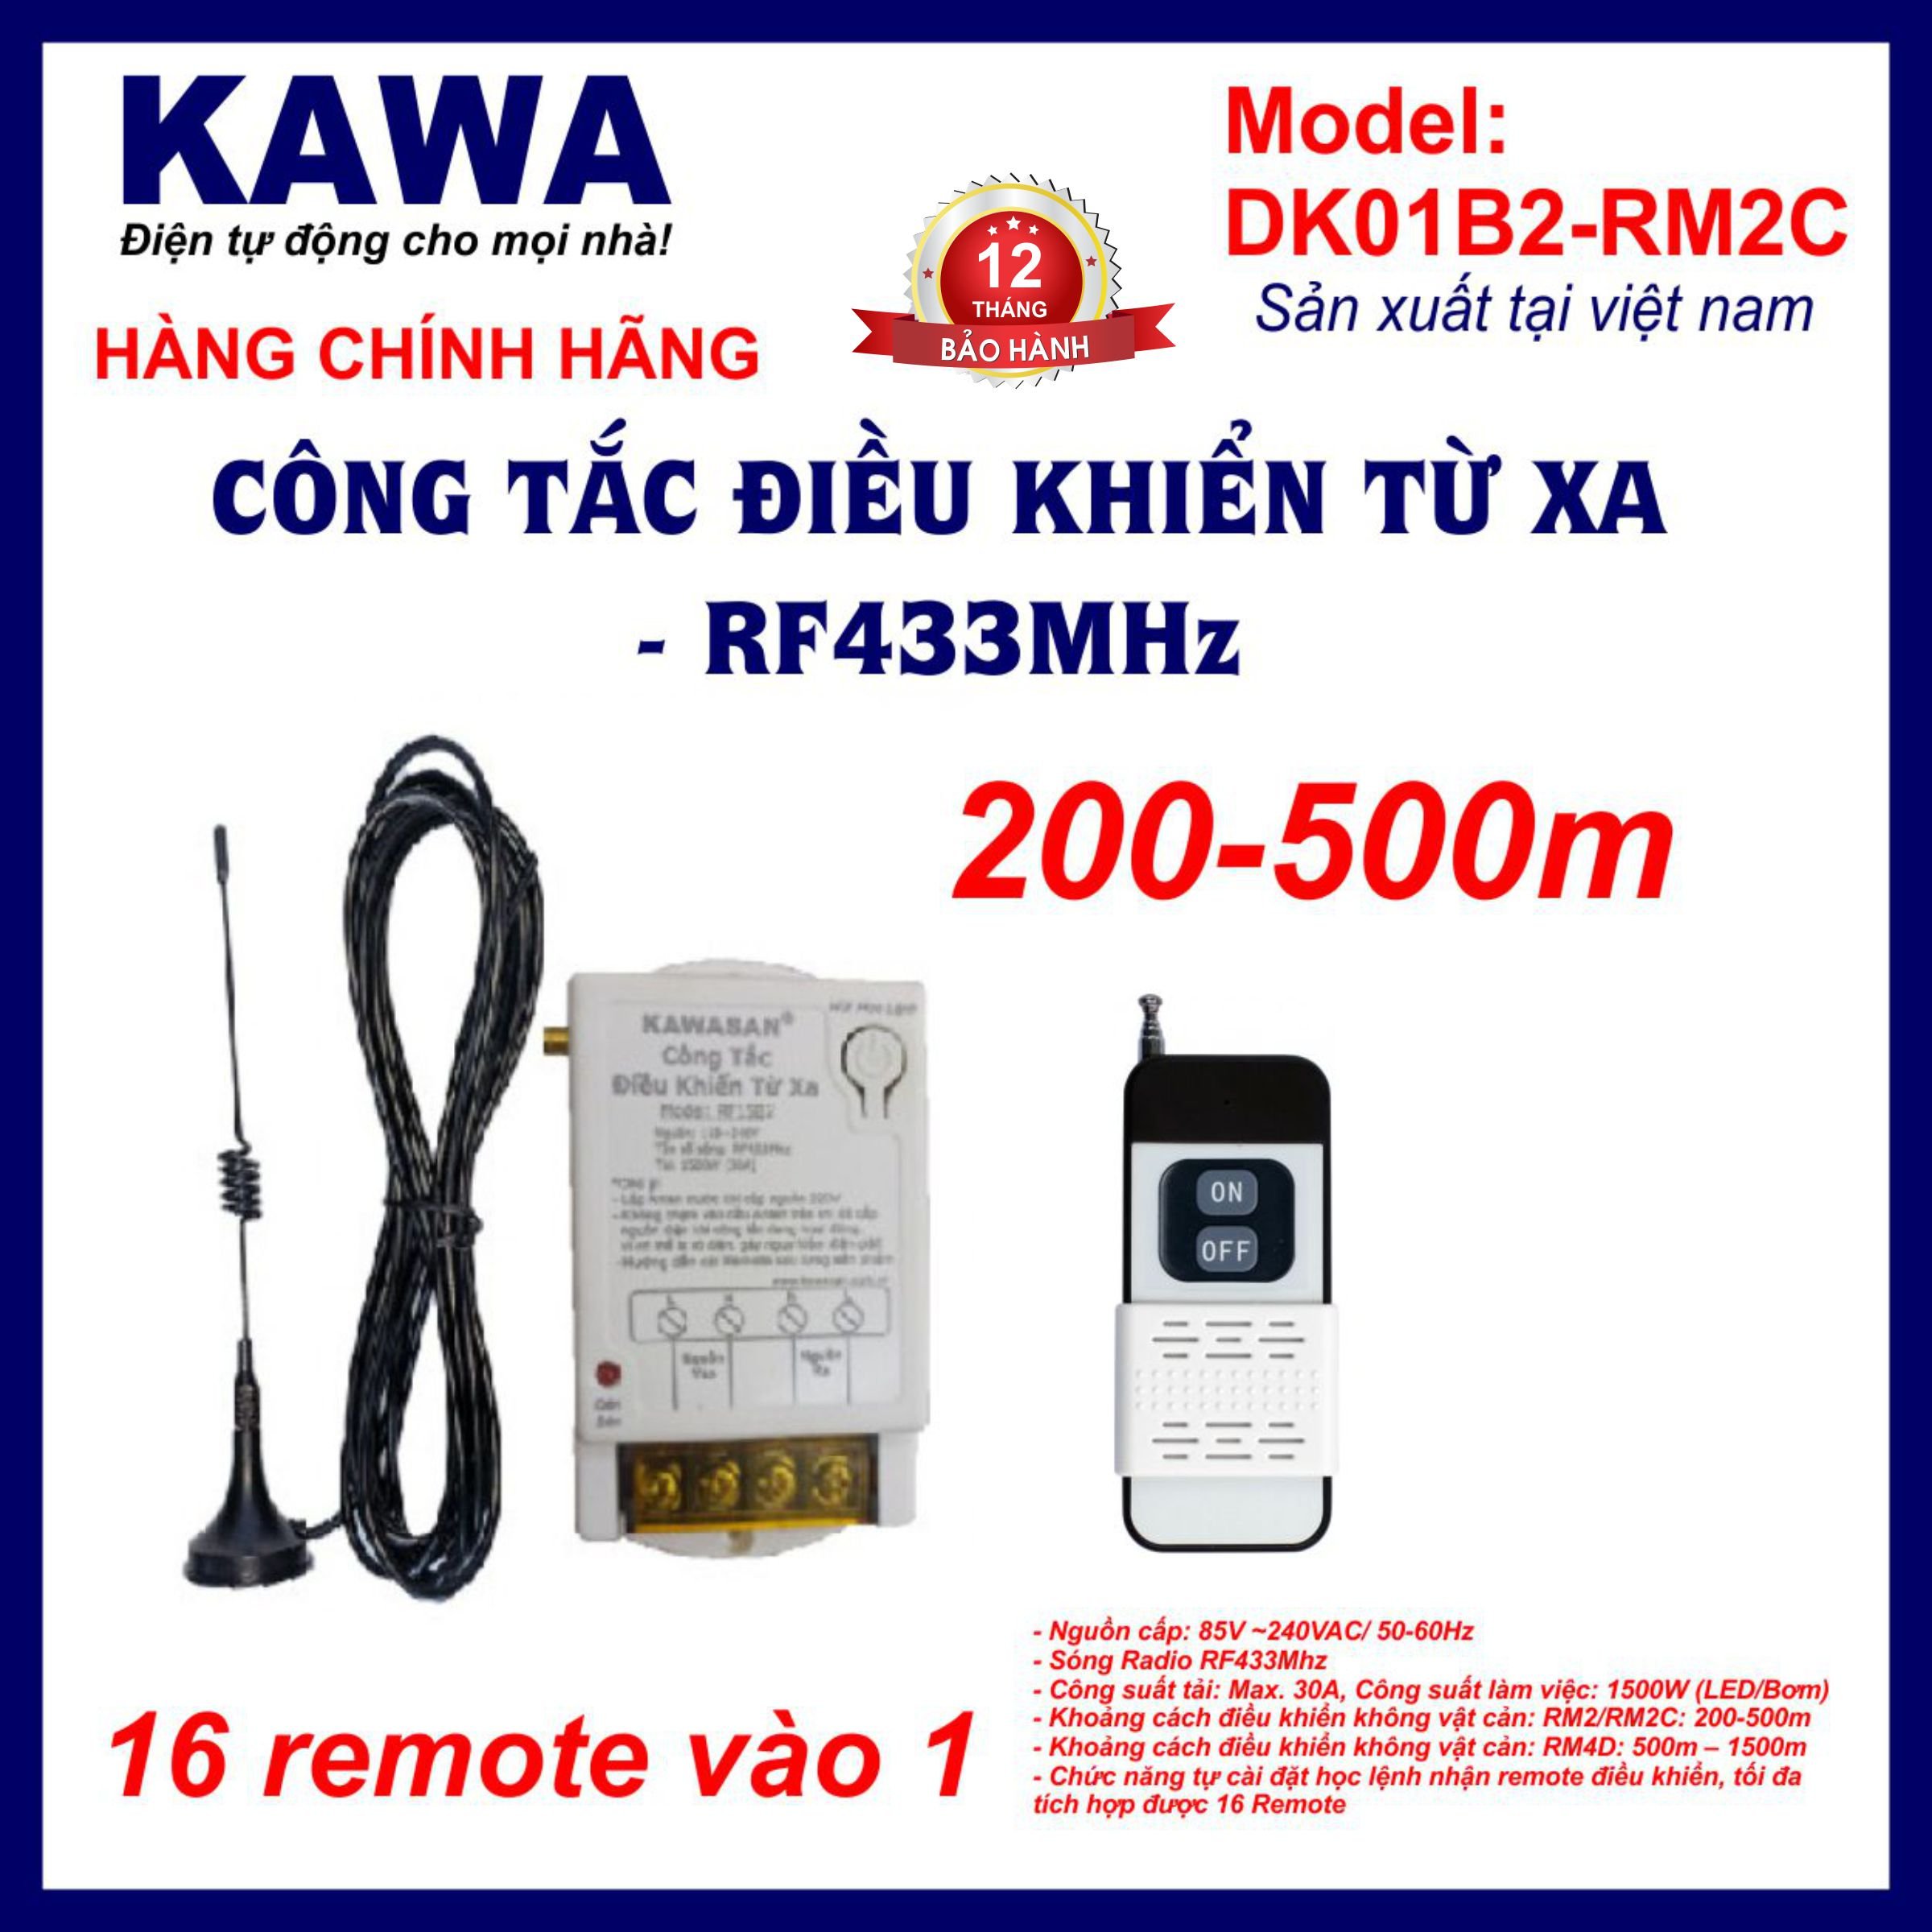 Công tắc điều khiển từ xa DK01B2-RM2C